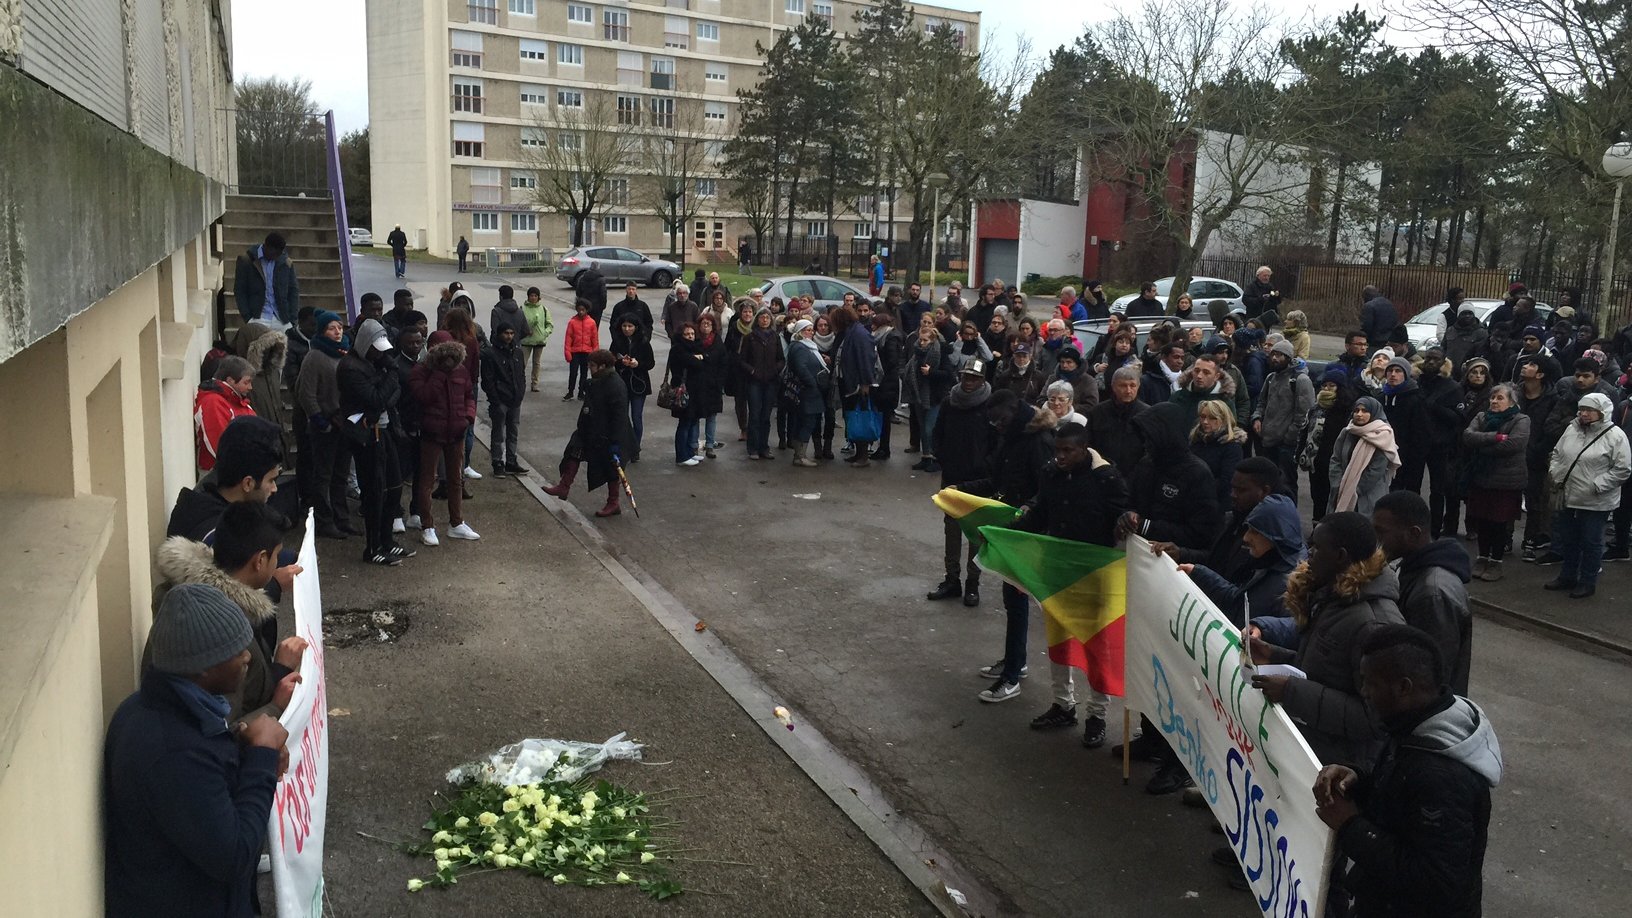 Une minute de silence a été observée au pied du foyer Bellevue où le jeune Malien est décédé. / Raphaël Doumergue / France 3 Champagne-Ardenne